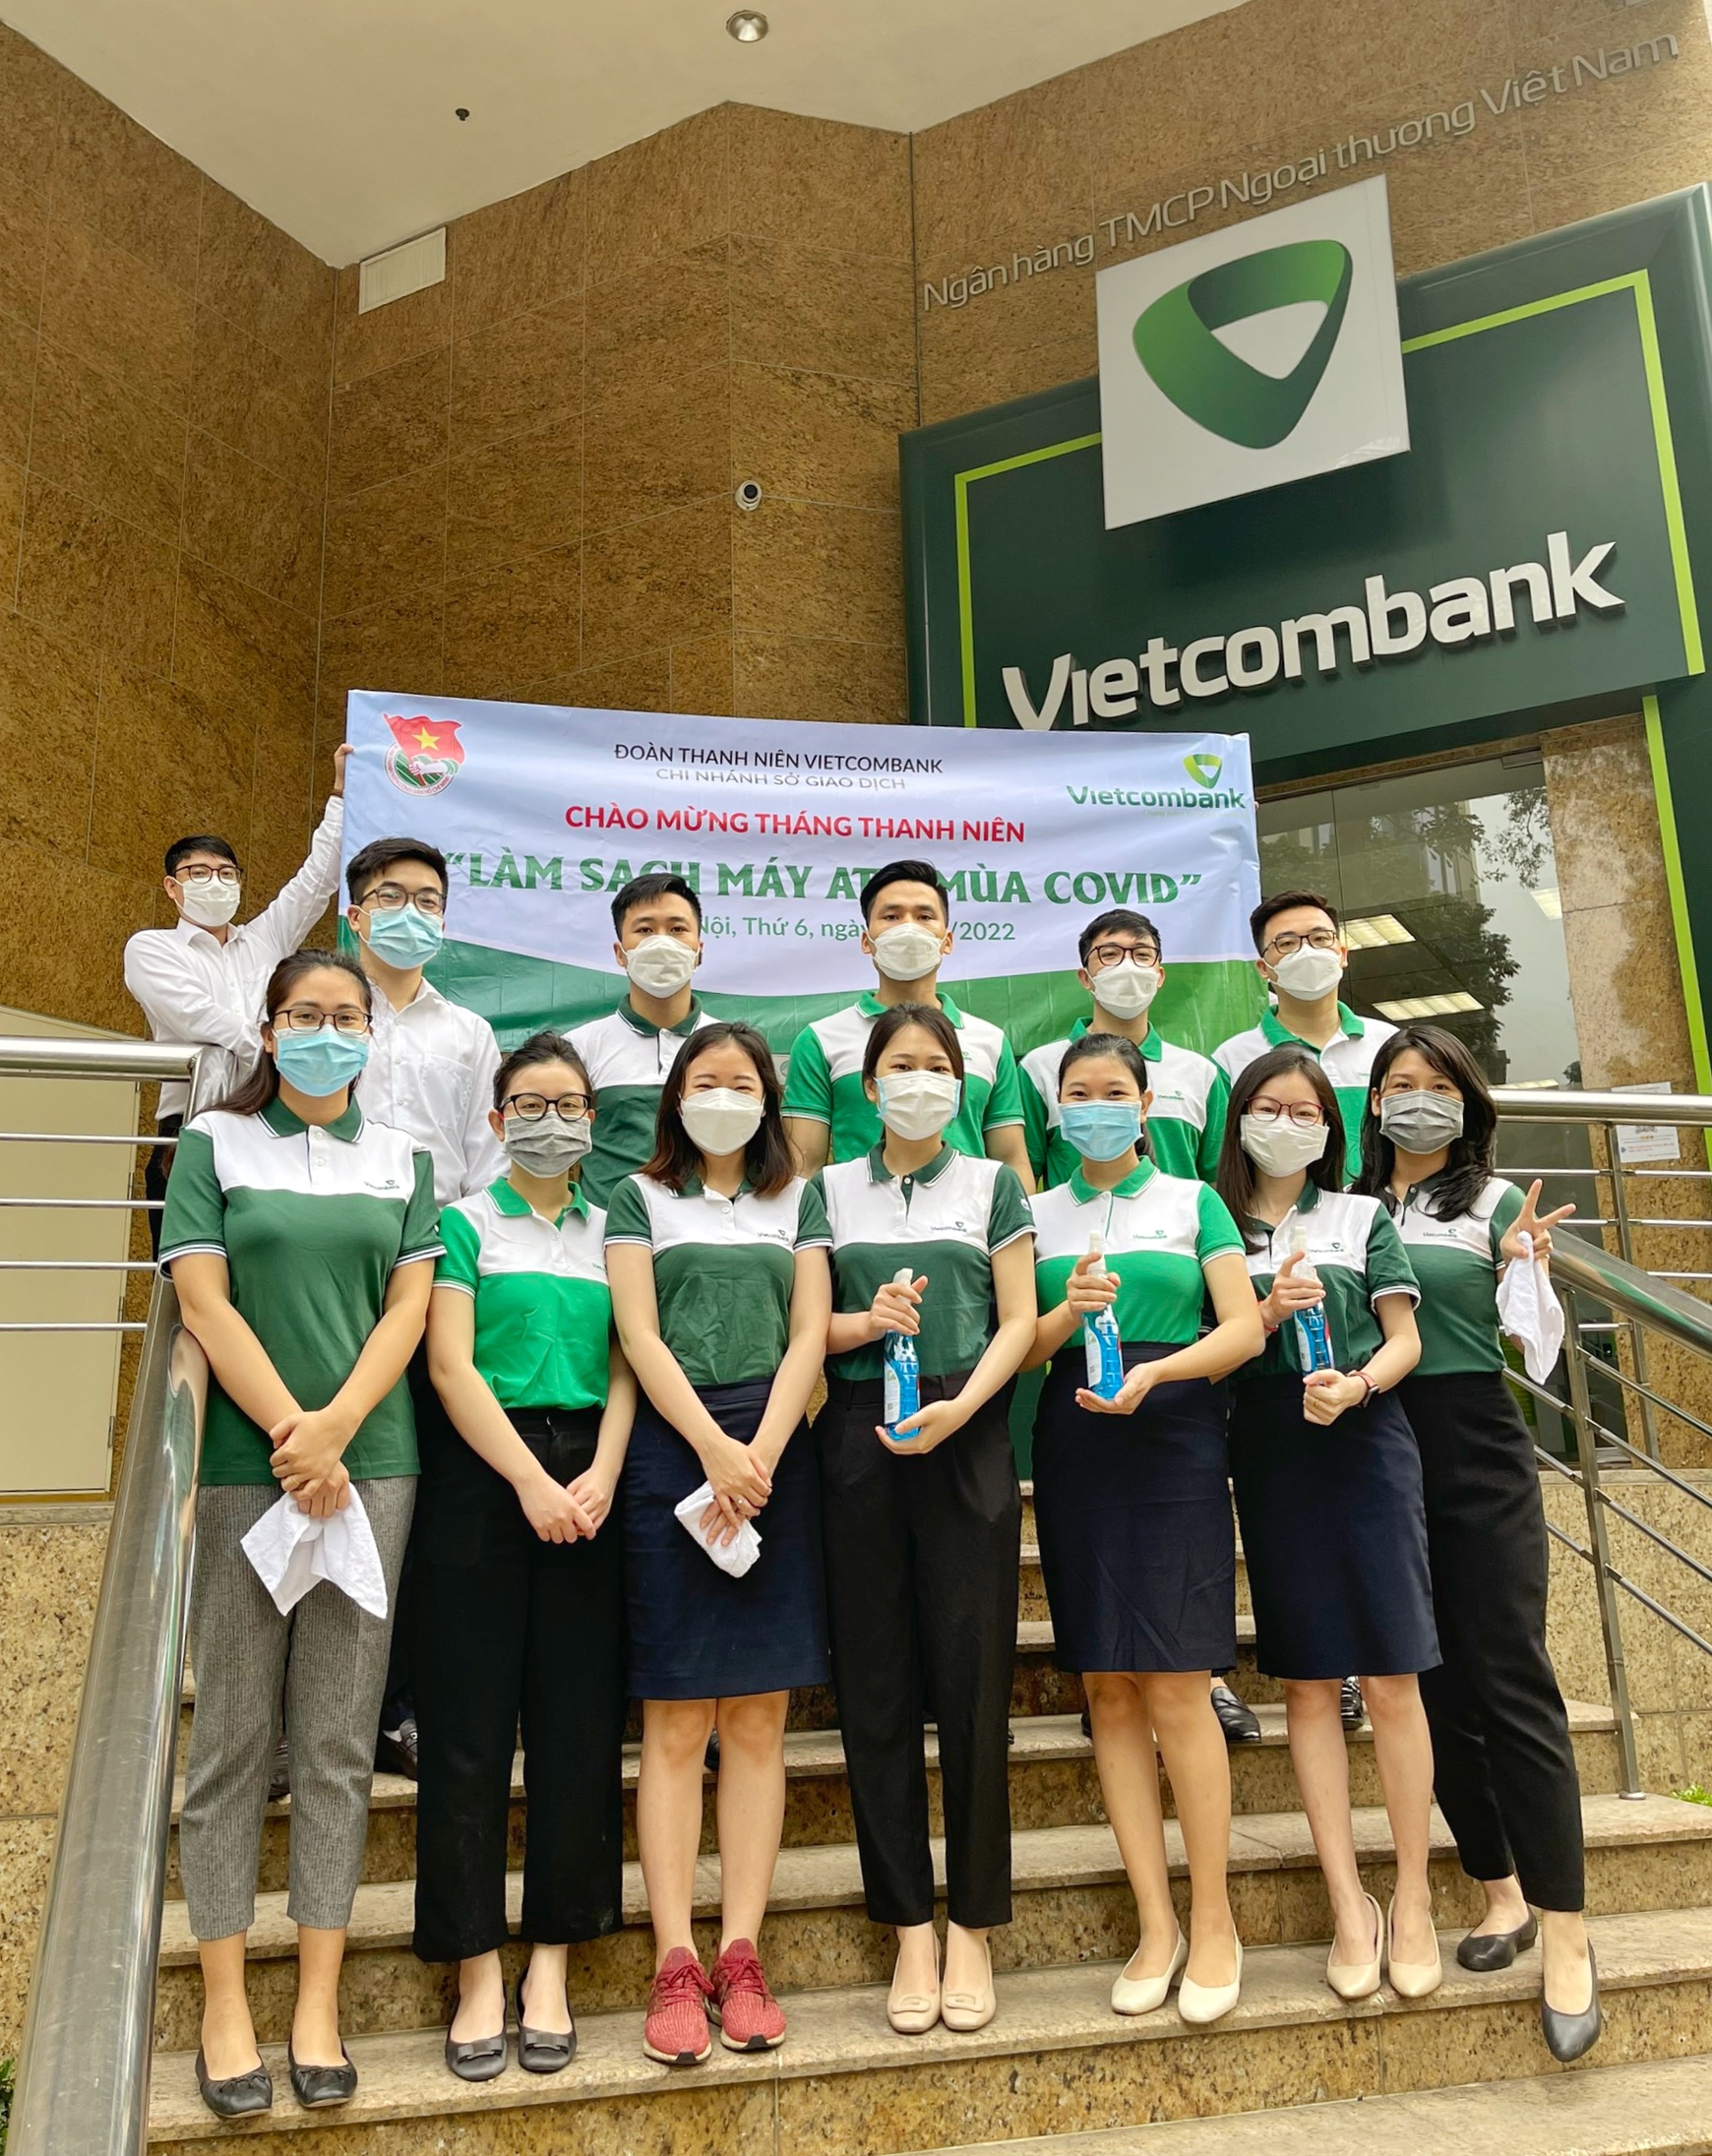  Đoàn thanh niên Vietcombank Sở giao dịch và những dấu ấn tháng 3